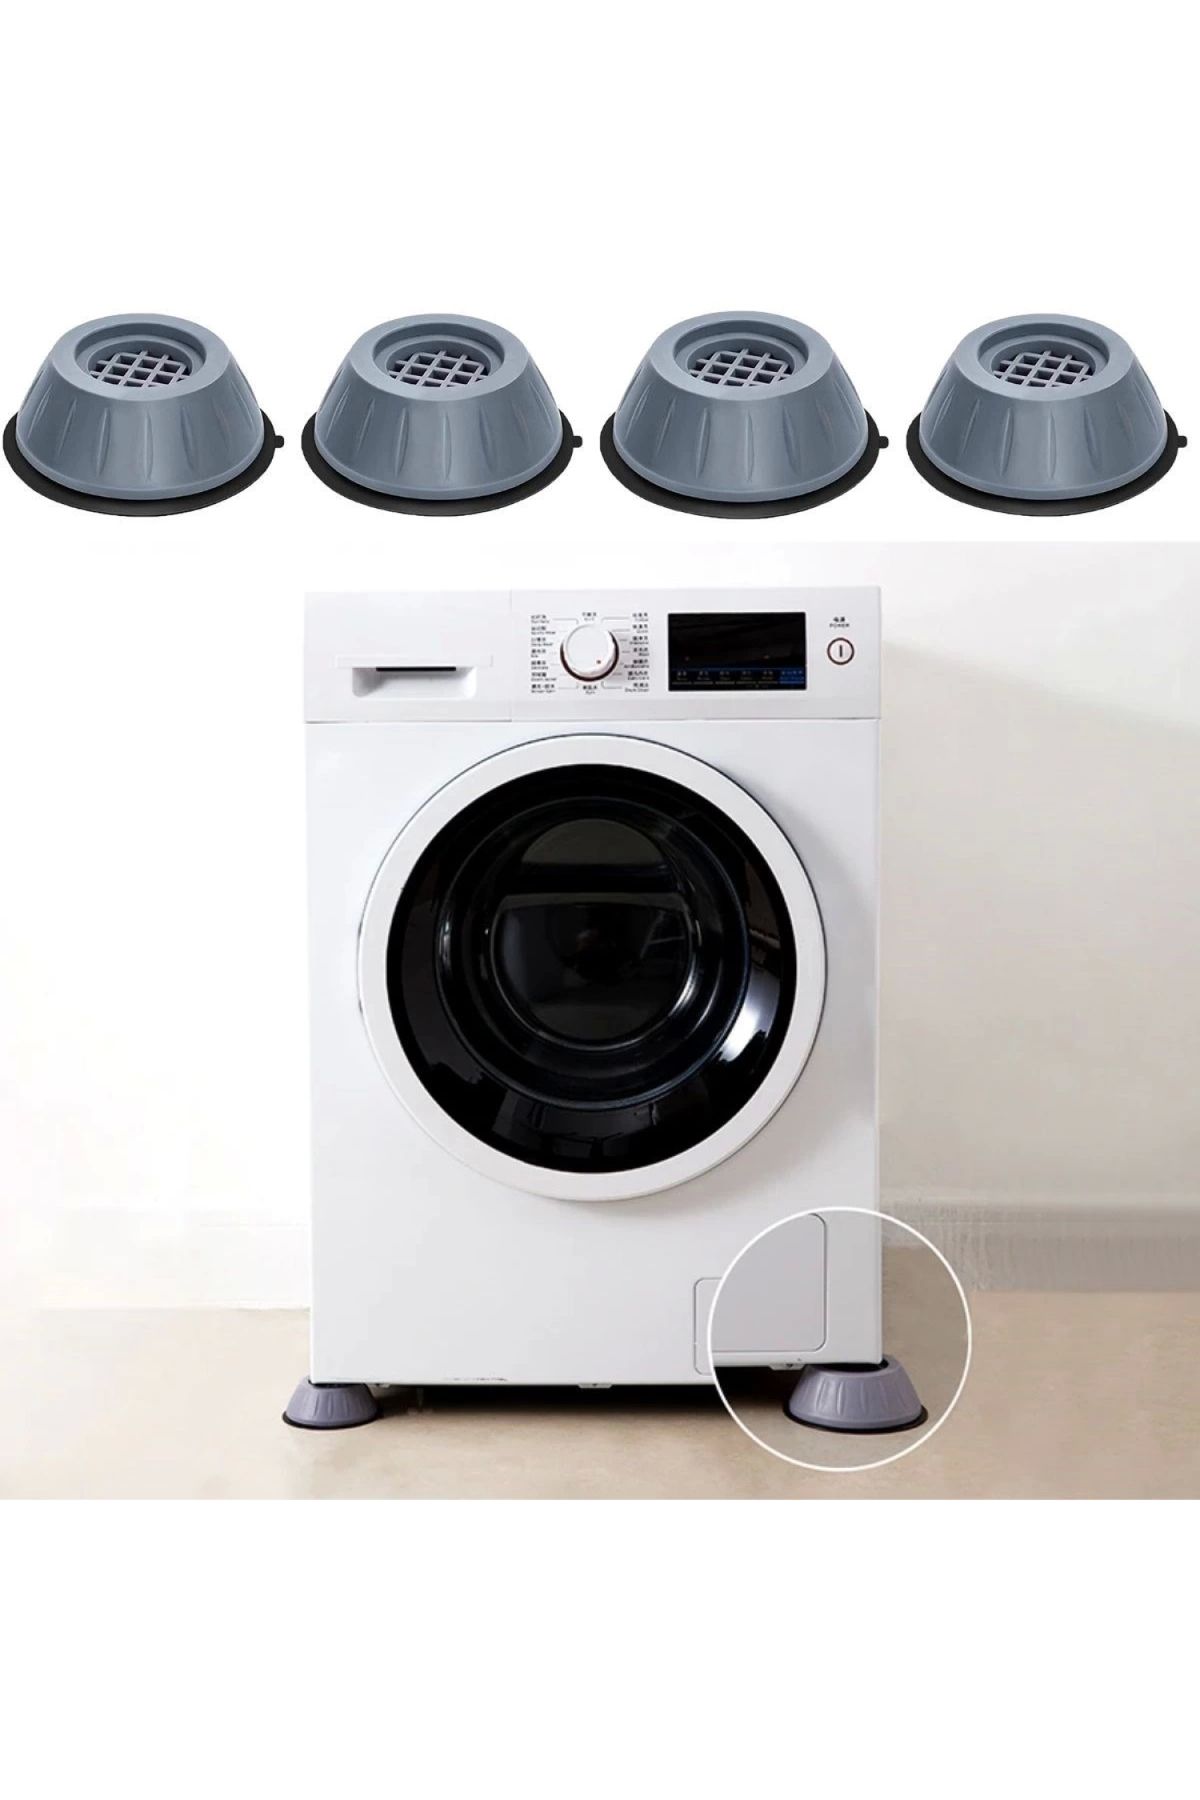 Narnuga Çamaşır Makinesi Sarsıntı Titreşim Ses Önleyici Kaydırmaz Ayak 4lü Set (K95)